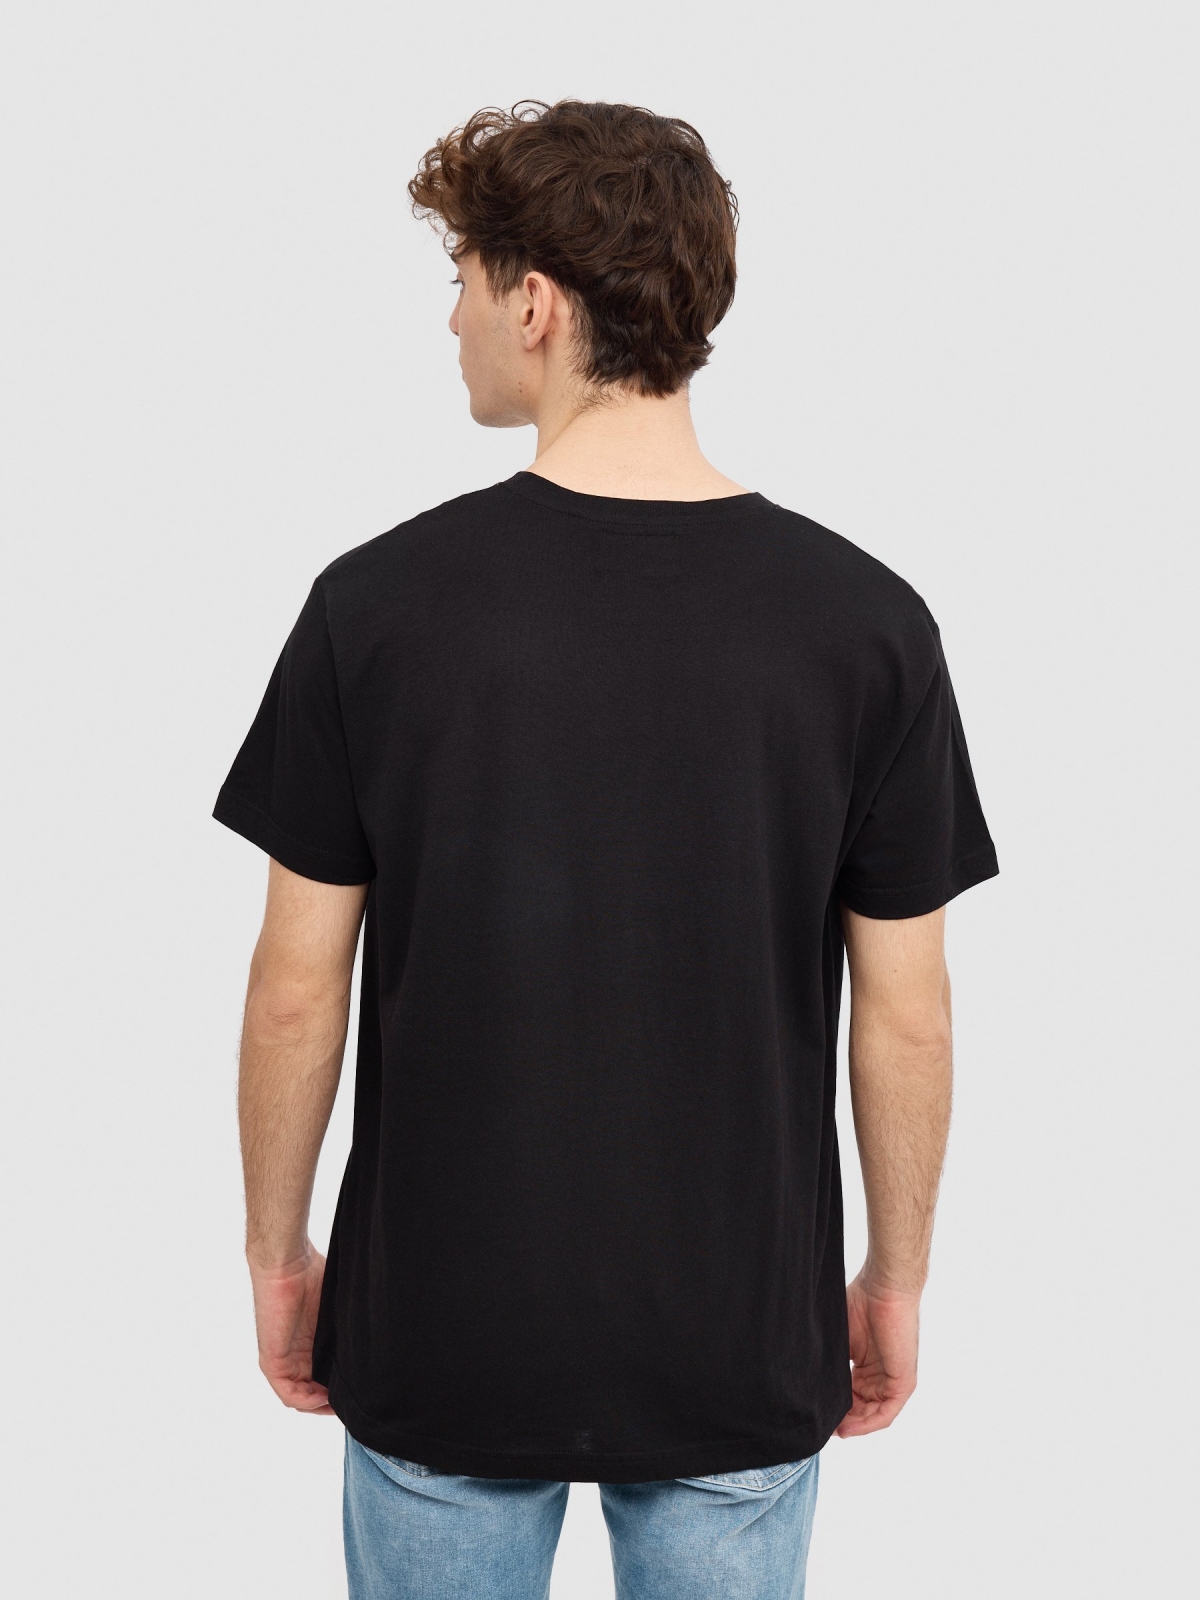 Camiseta logo INSIDE negro vista media trasera